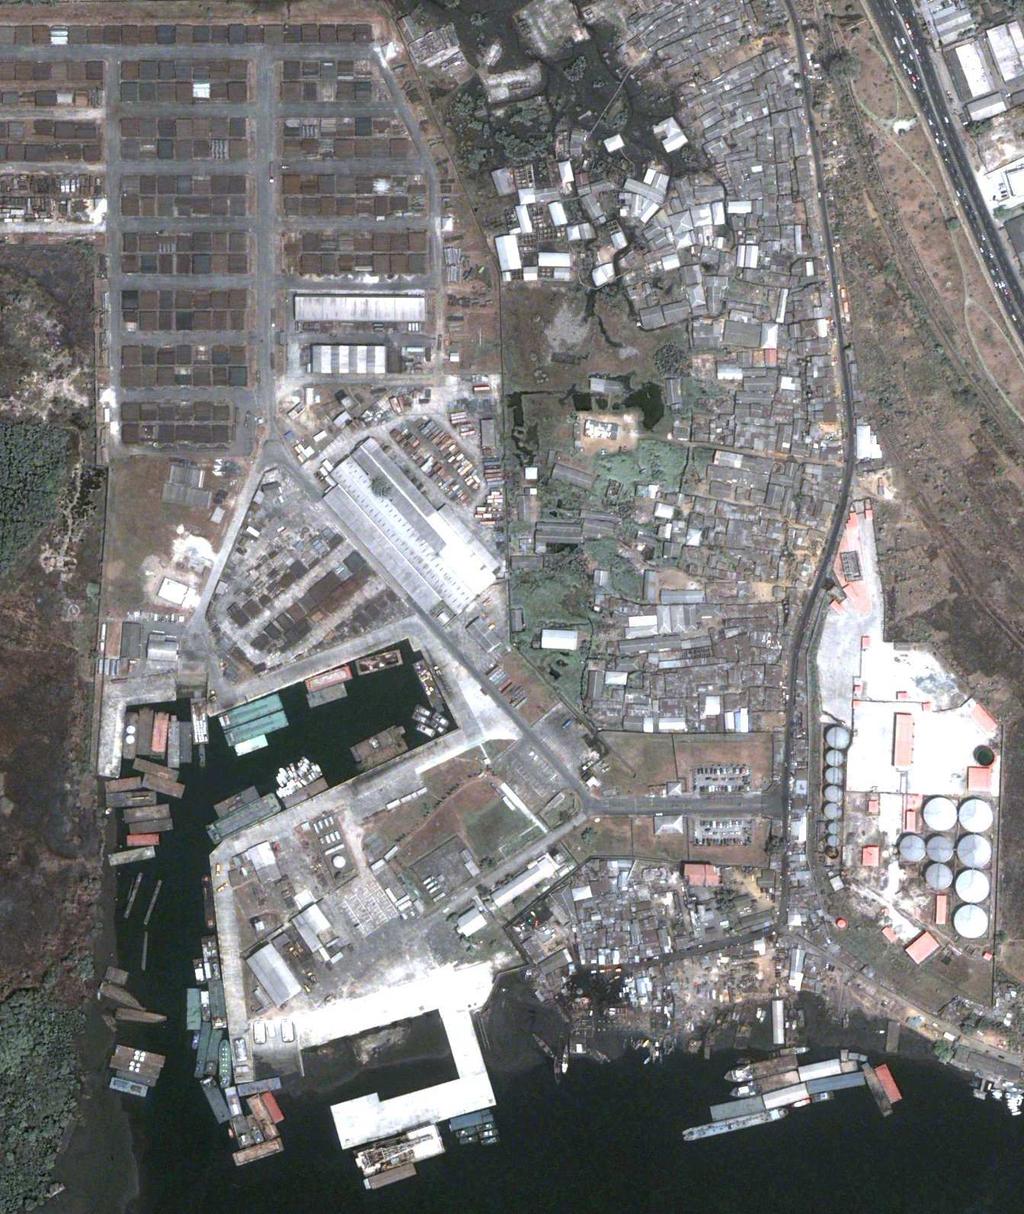 Digitalglobe Satellite image of